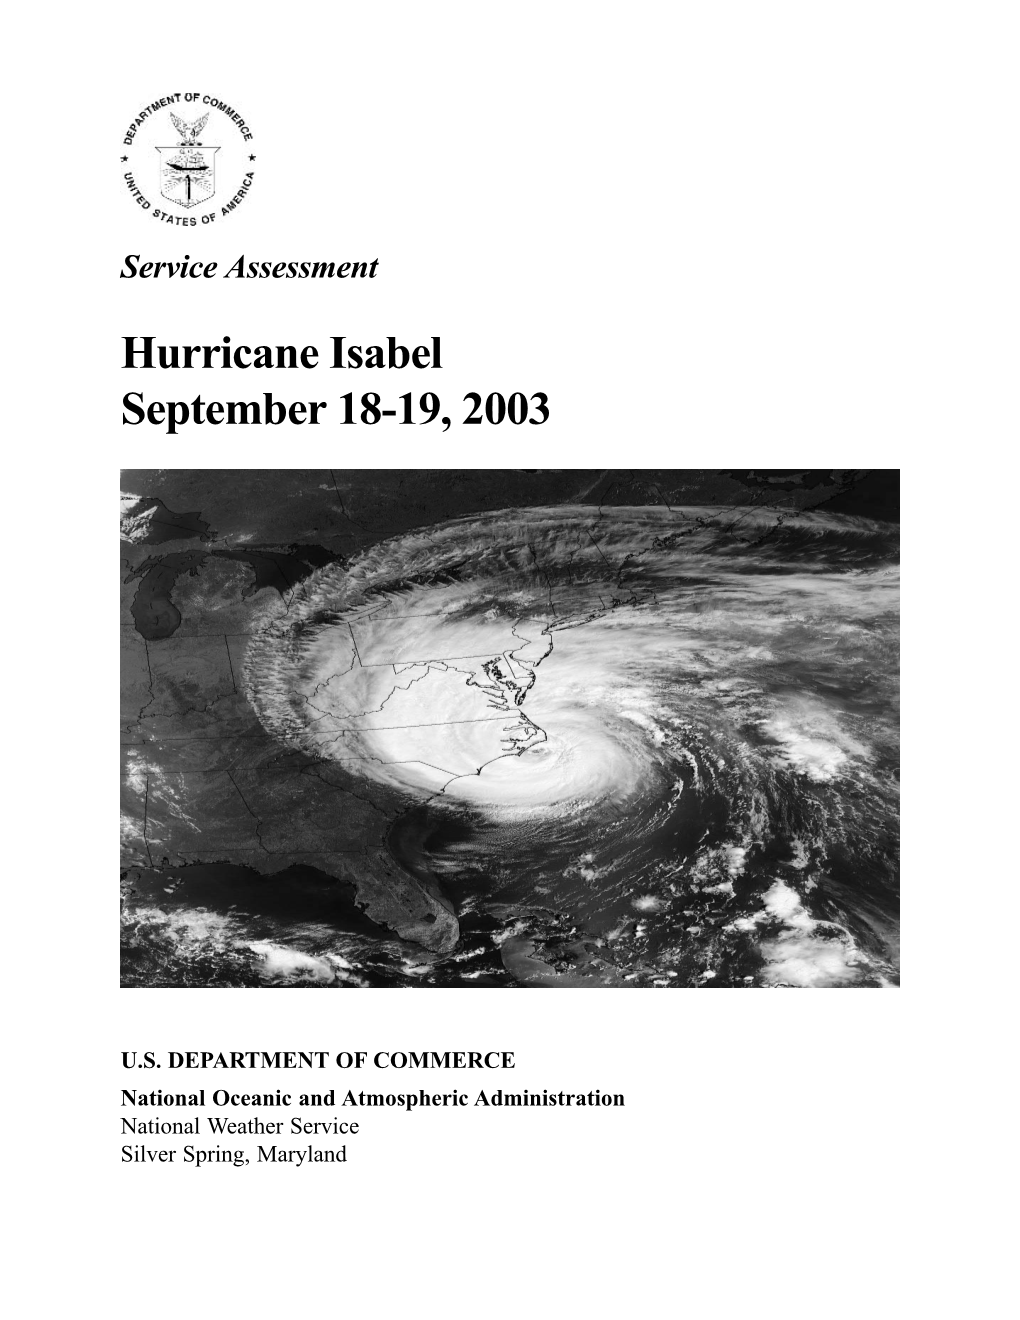 'Service Assessment': Hurricane Isabel September 18-19, 2003